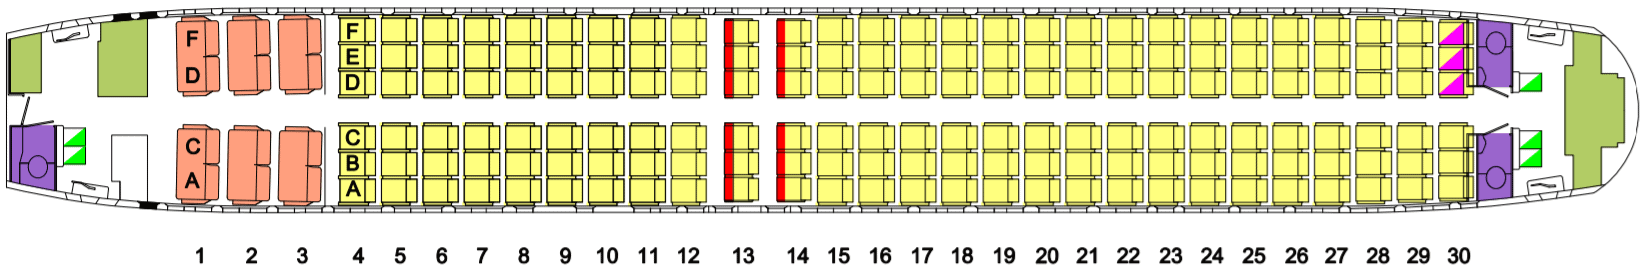 Qantas B737-800 Seat Map